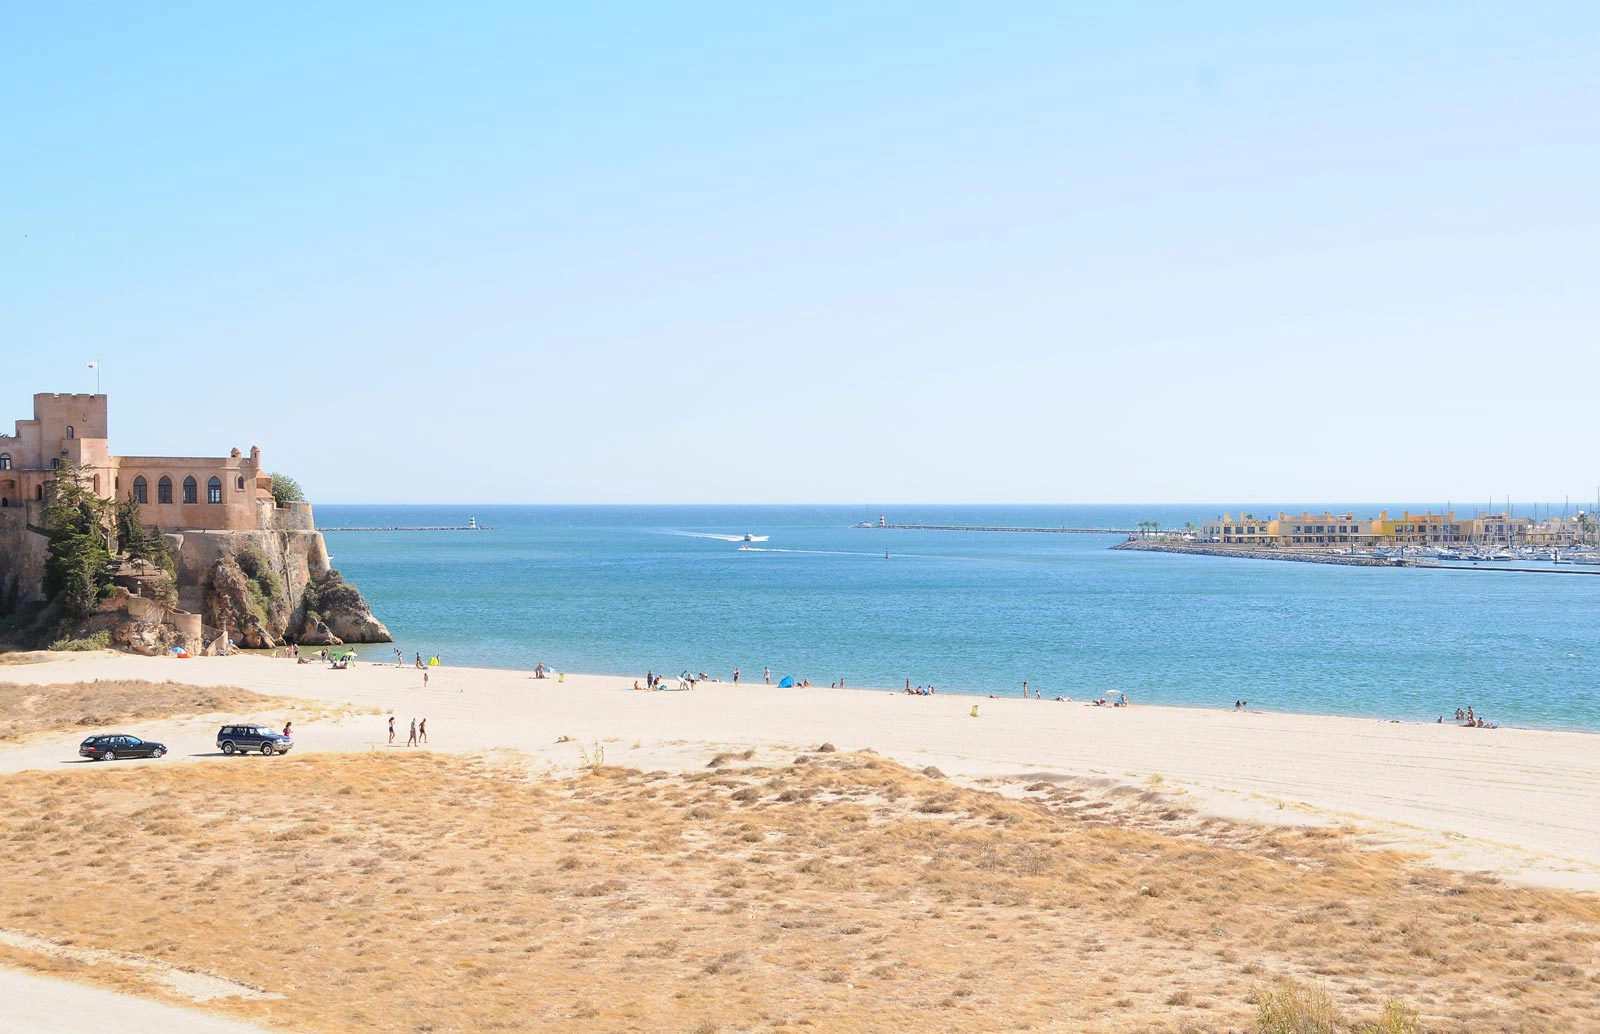  Angrinha  strand - Algarve